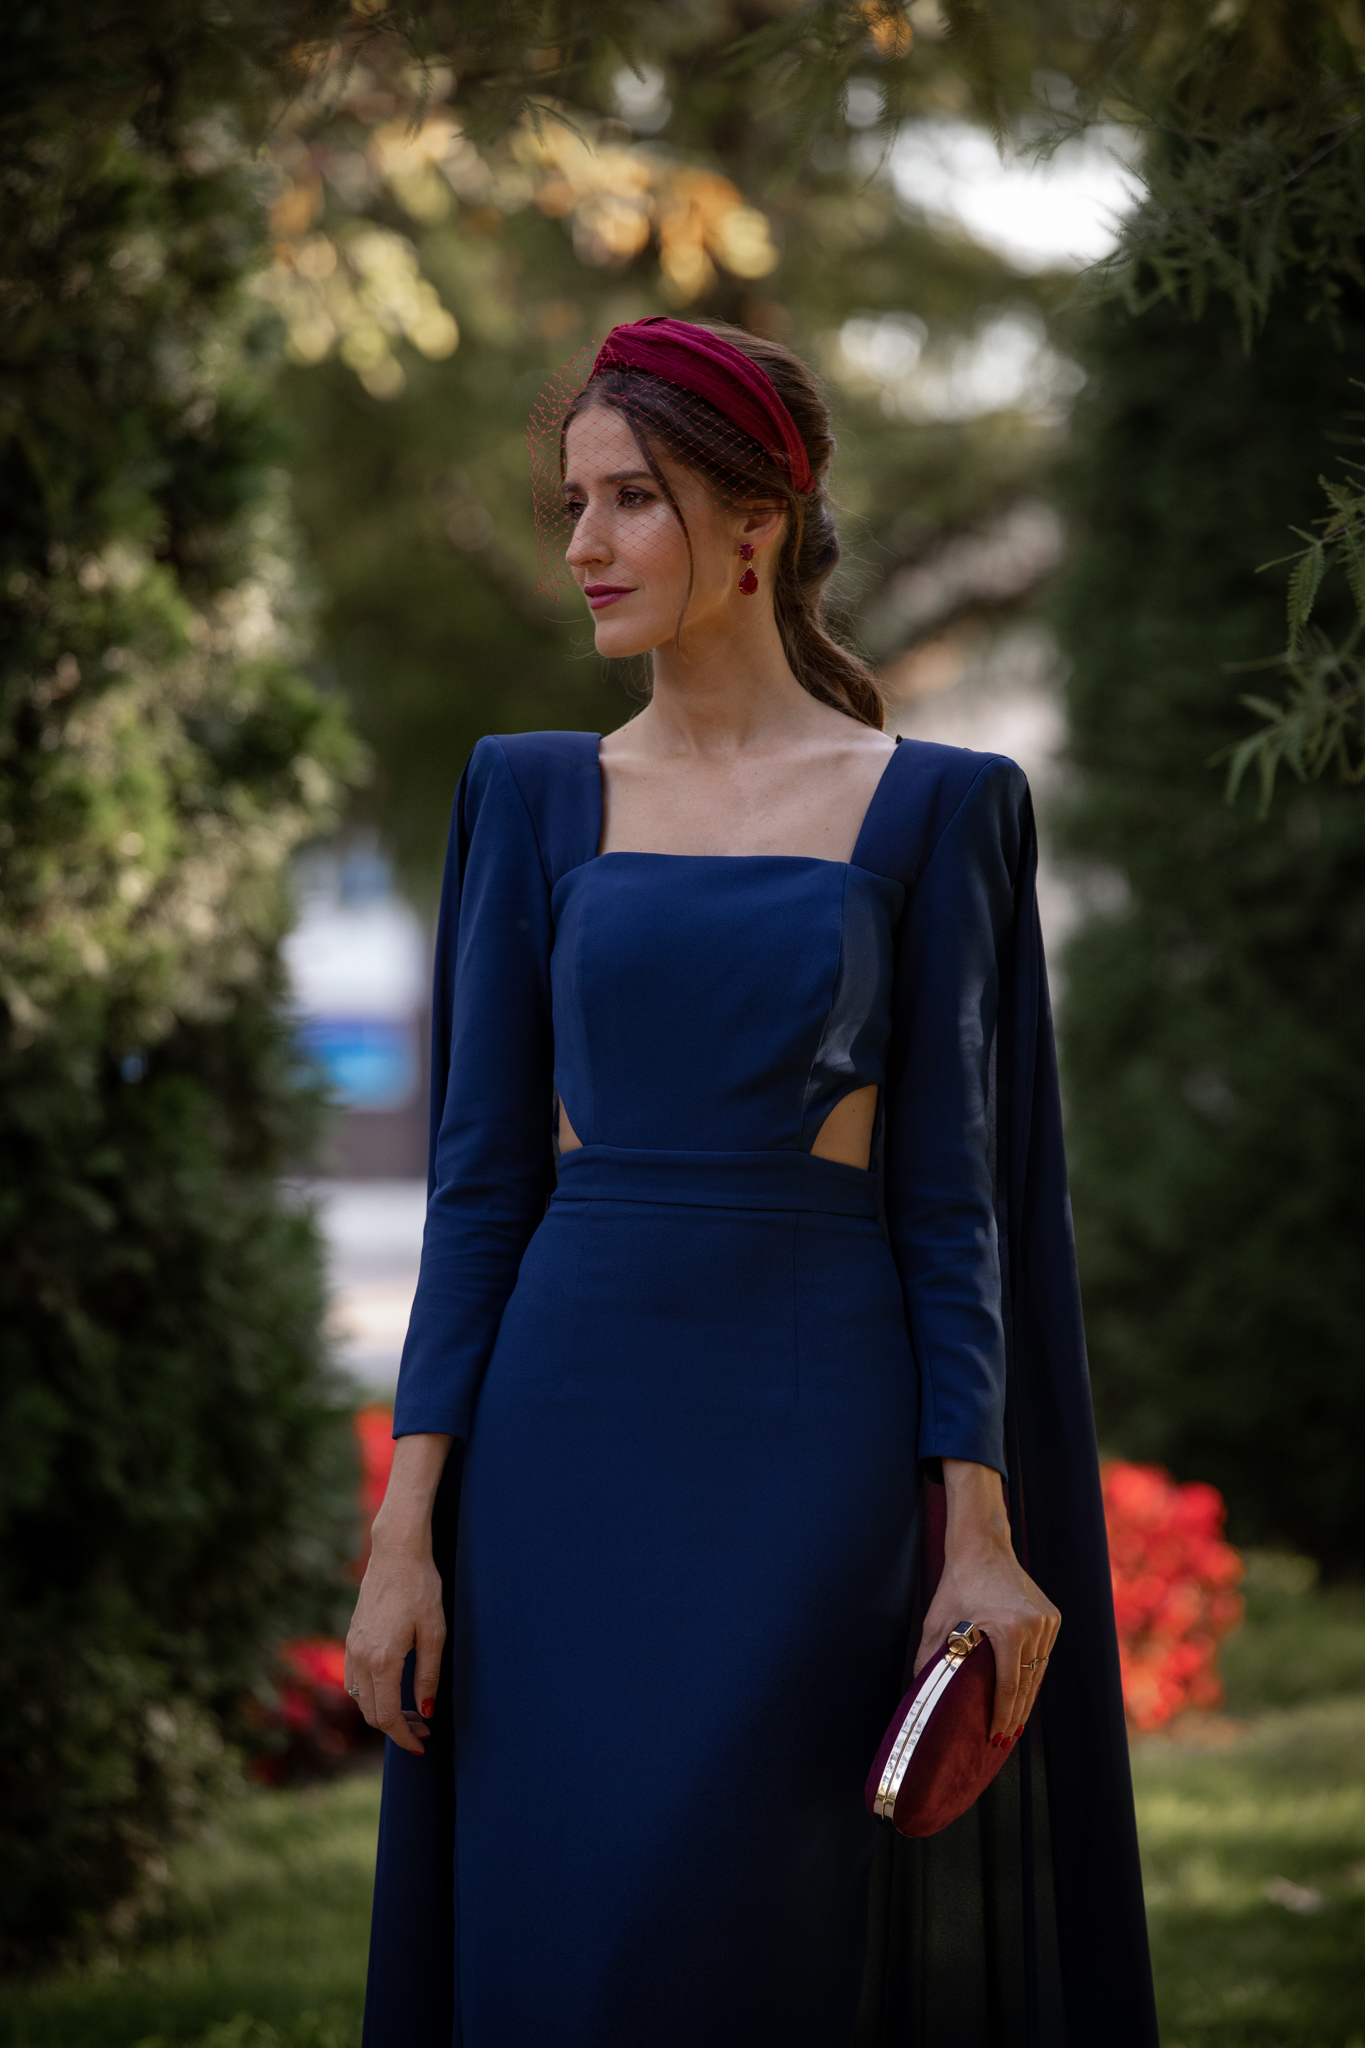 vestido azul capa invierno tocado